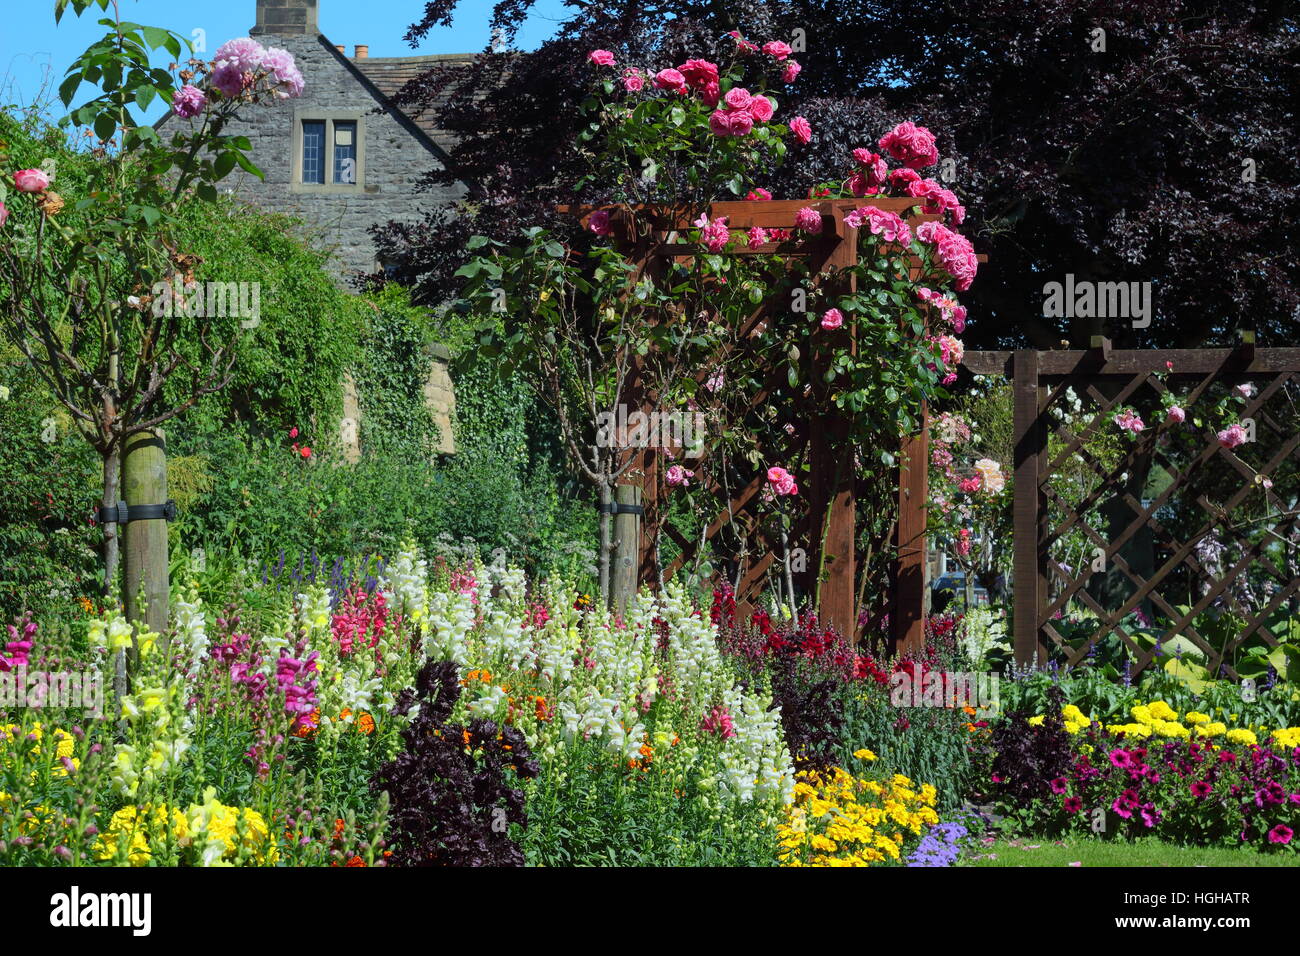 Sommer Blumen Grenze zeigt geschichteten Höhen mit Ringelblumen, Löwenmäulchen (Antirrhinums) und Rosen in einem englischen Garten Stockfoto